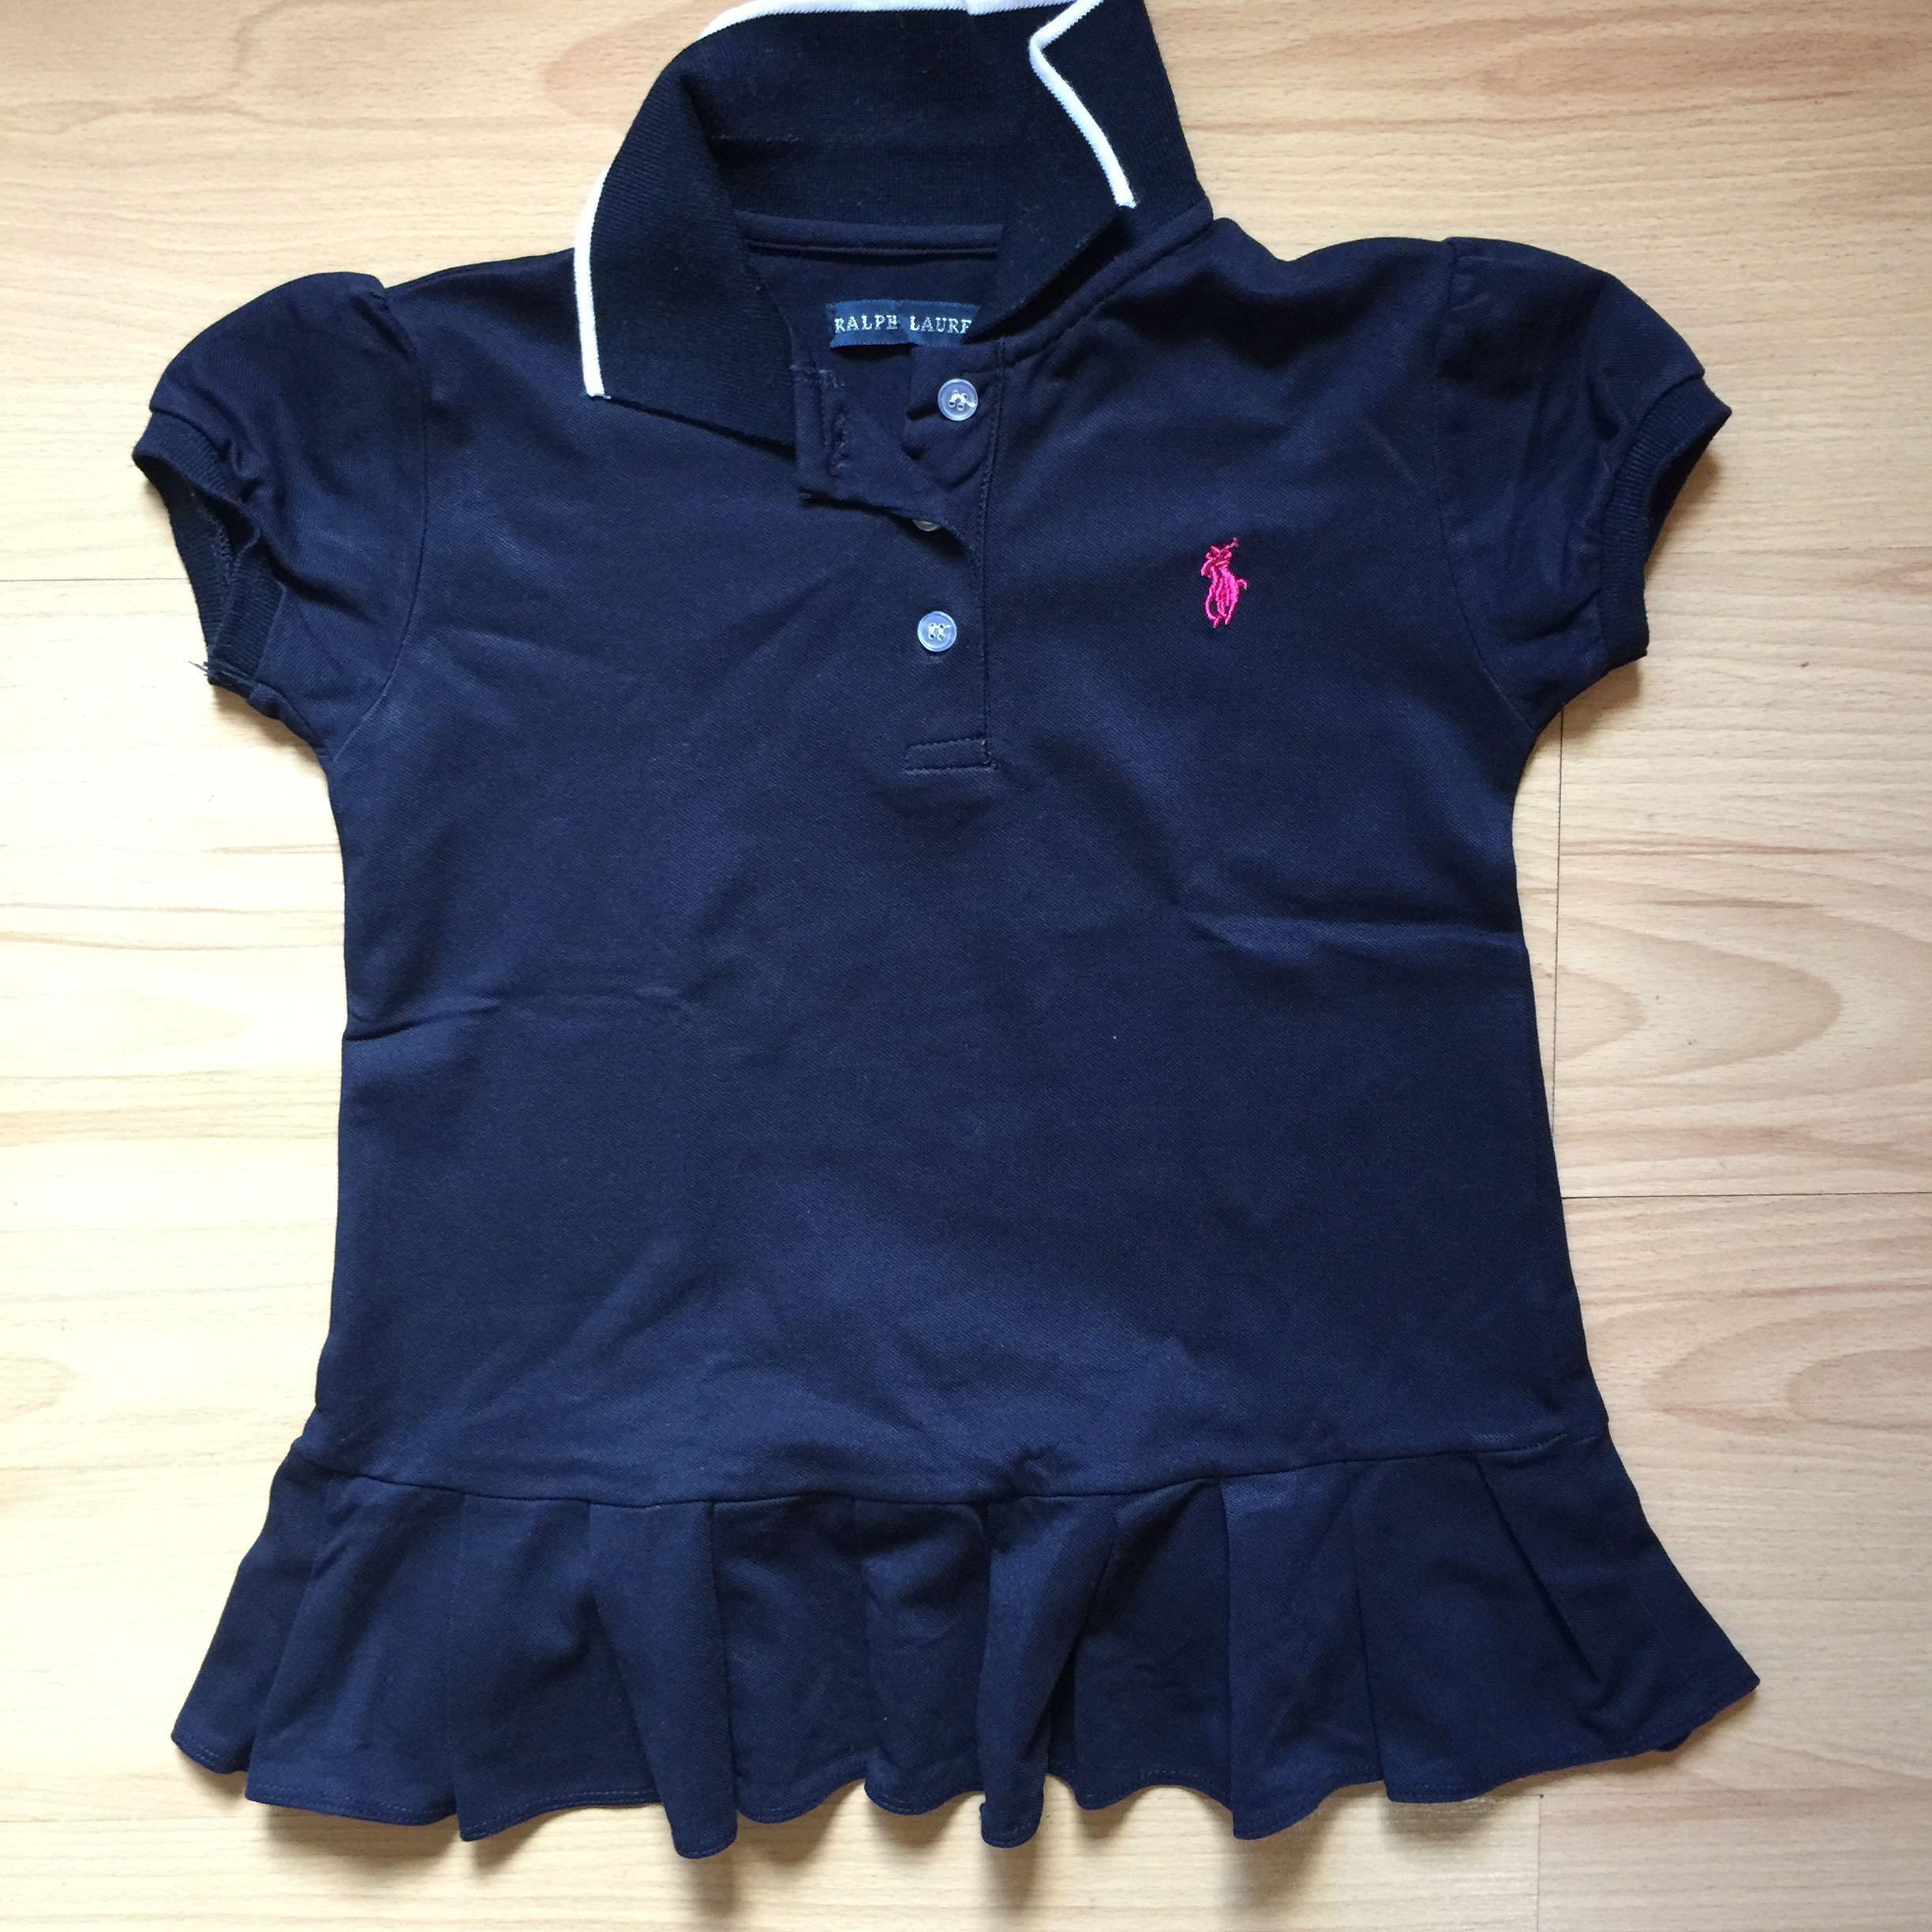 Old Ralph Lauren Logo - Ralph Lauren Polo shirt Fits 7-8yrs old, Babies & Kids, Girls ...